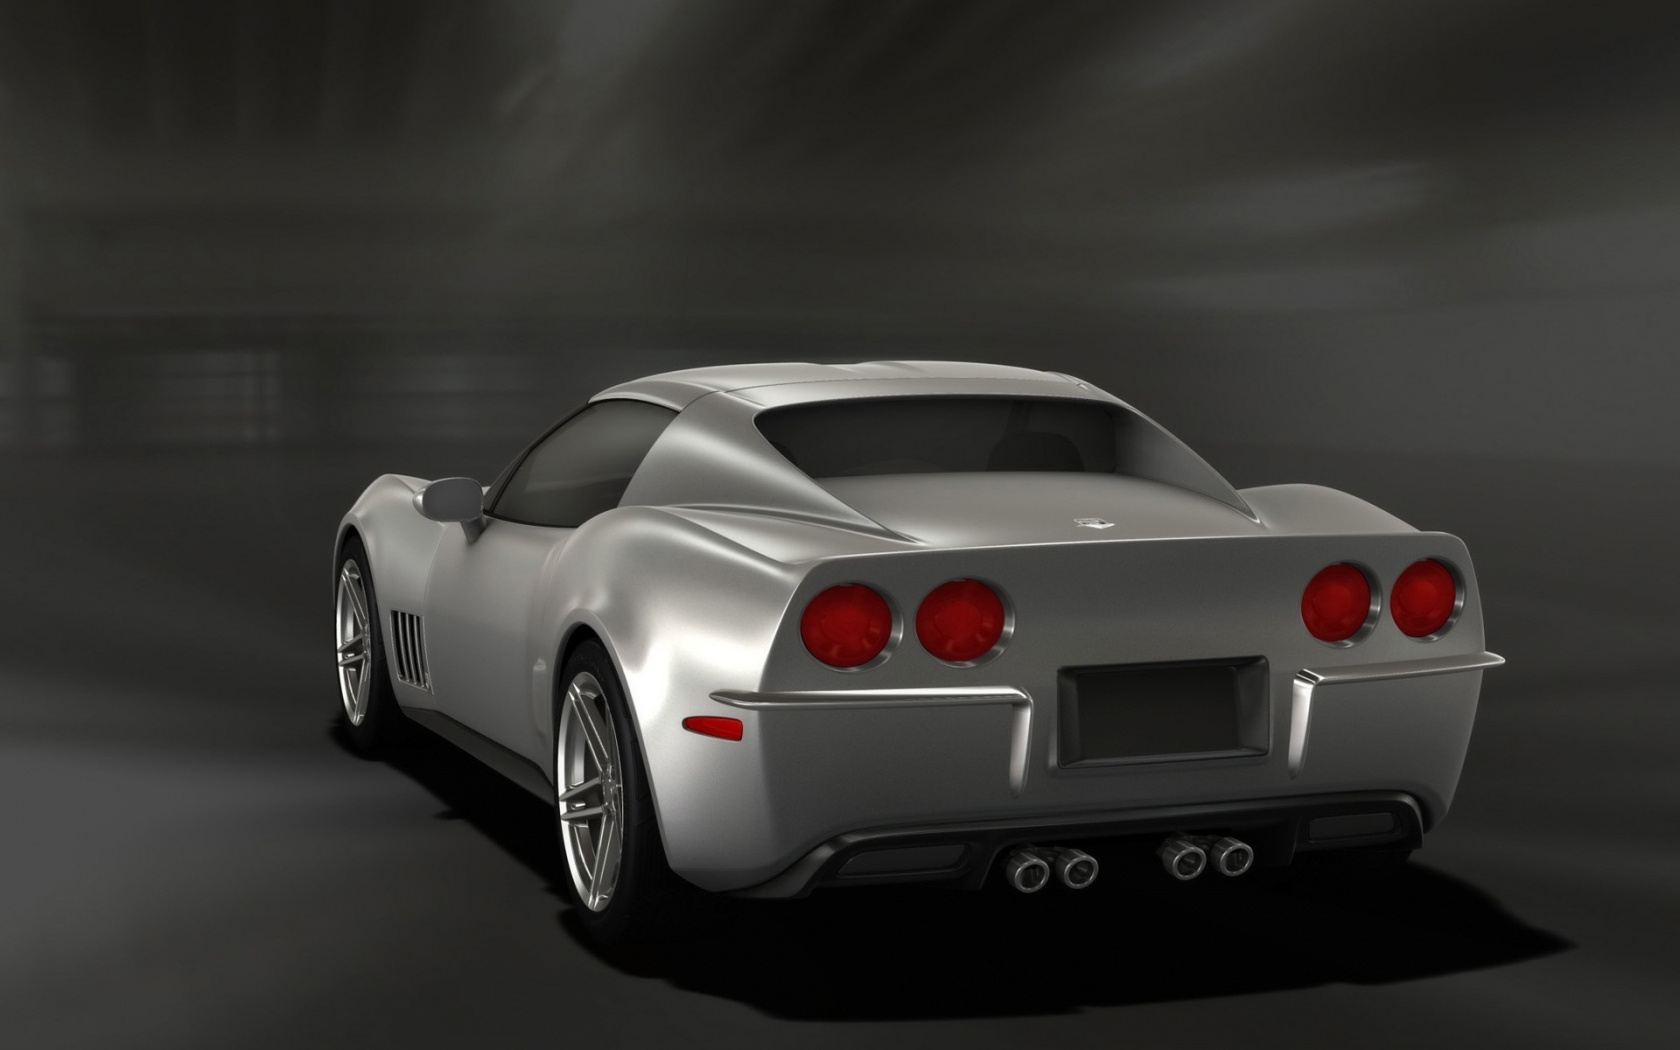 Retro Corvette Stingray Silver Rear Angle 2009 for 1680 x 1050 widescreen resolution